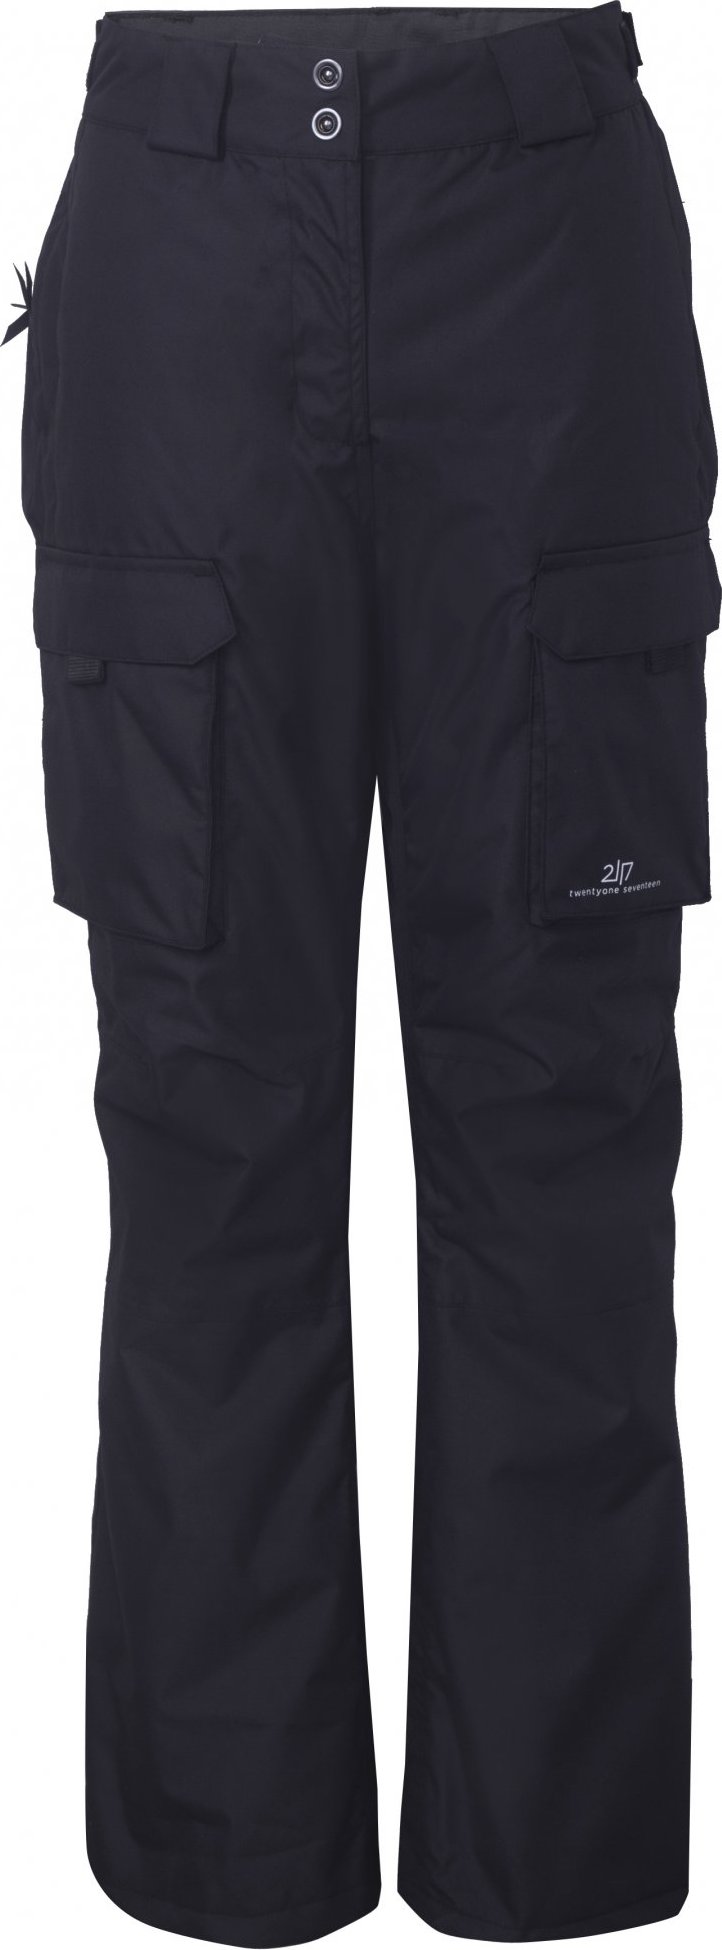 Dámské lyžařské kalhoty 2117 Tybble Eco černá Velikost: S